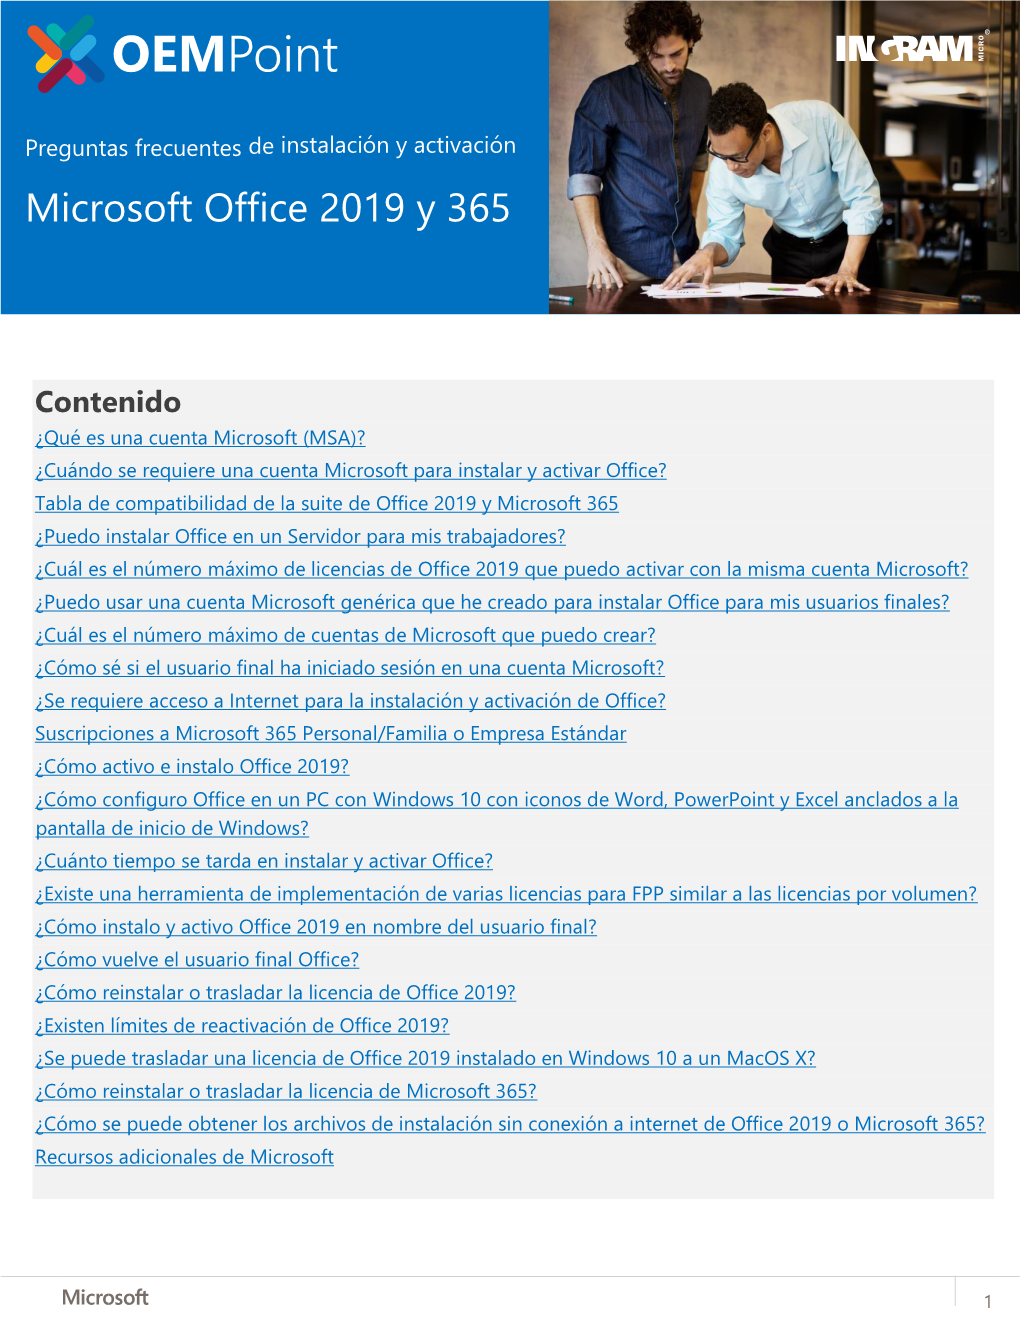 Microsoft Office 2019 Y 365